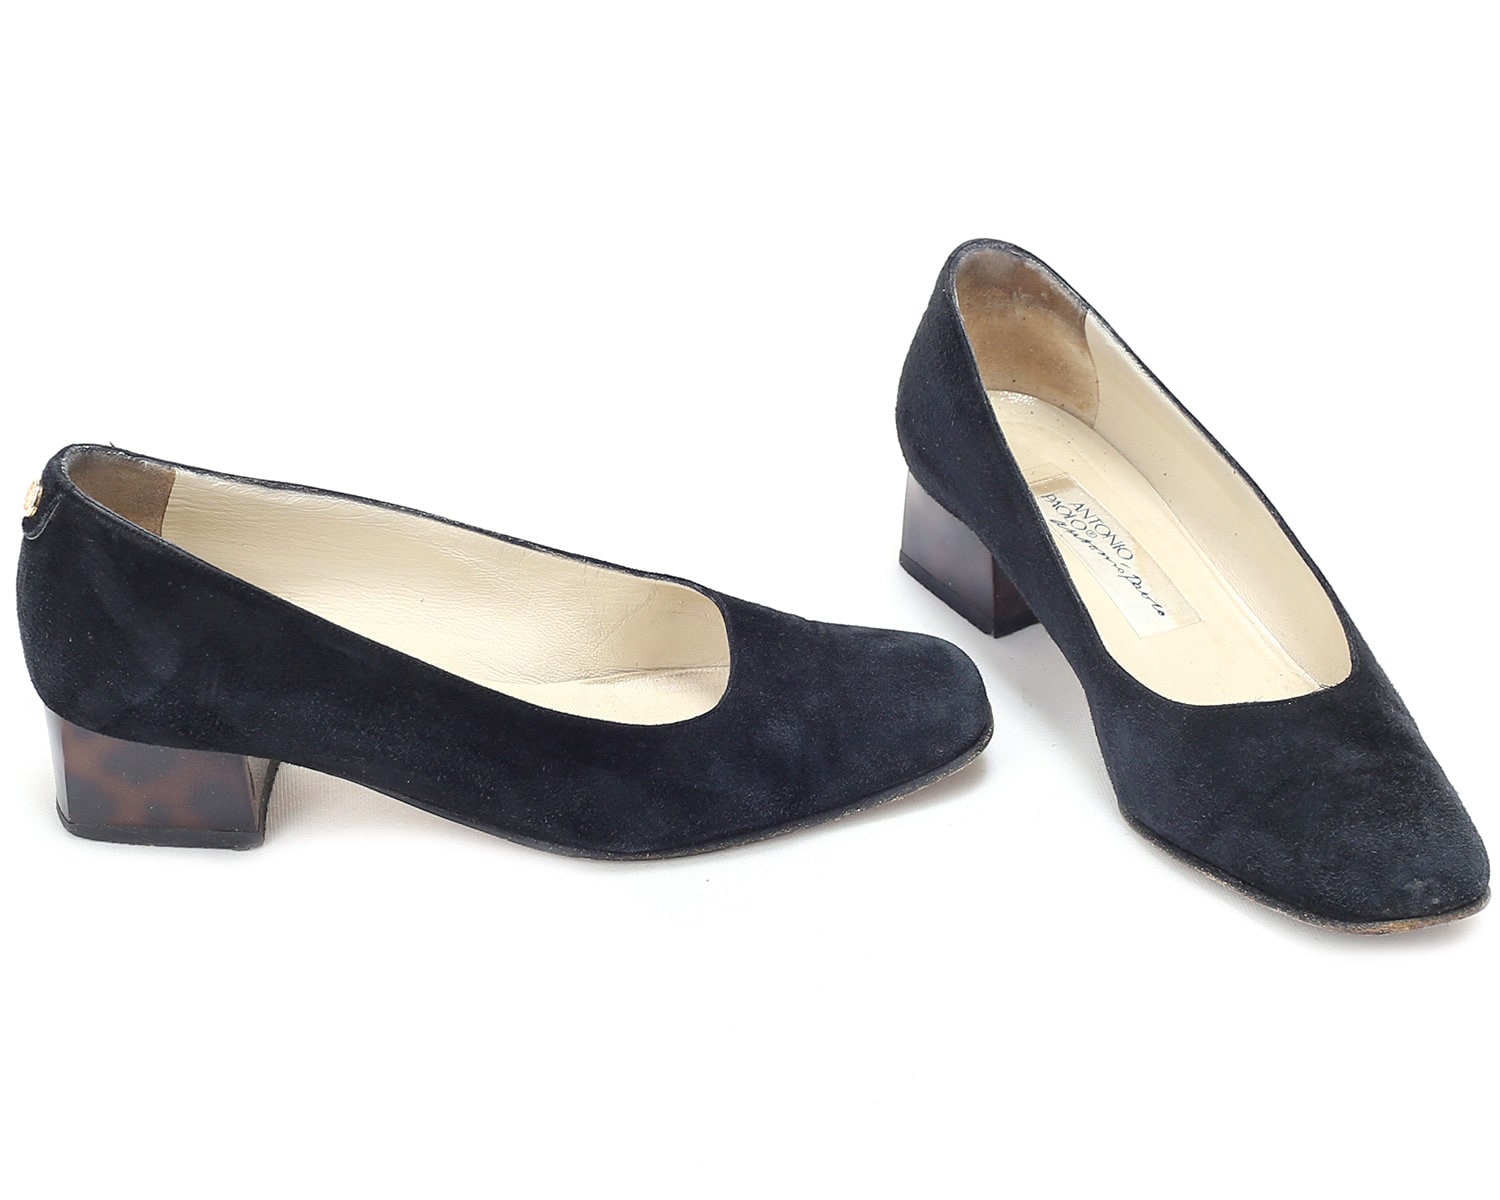 black suede pumps low heel